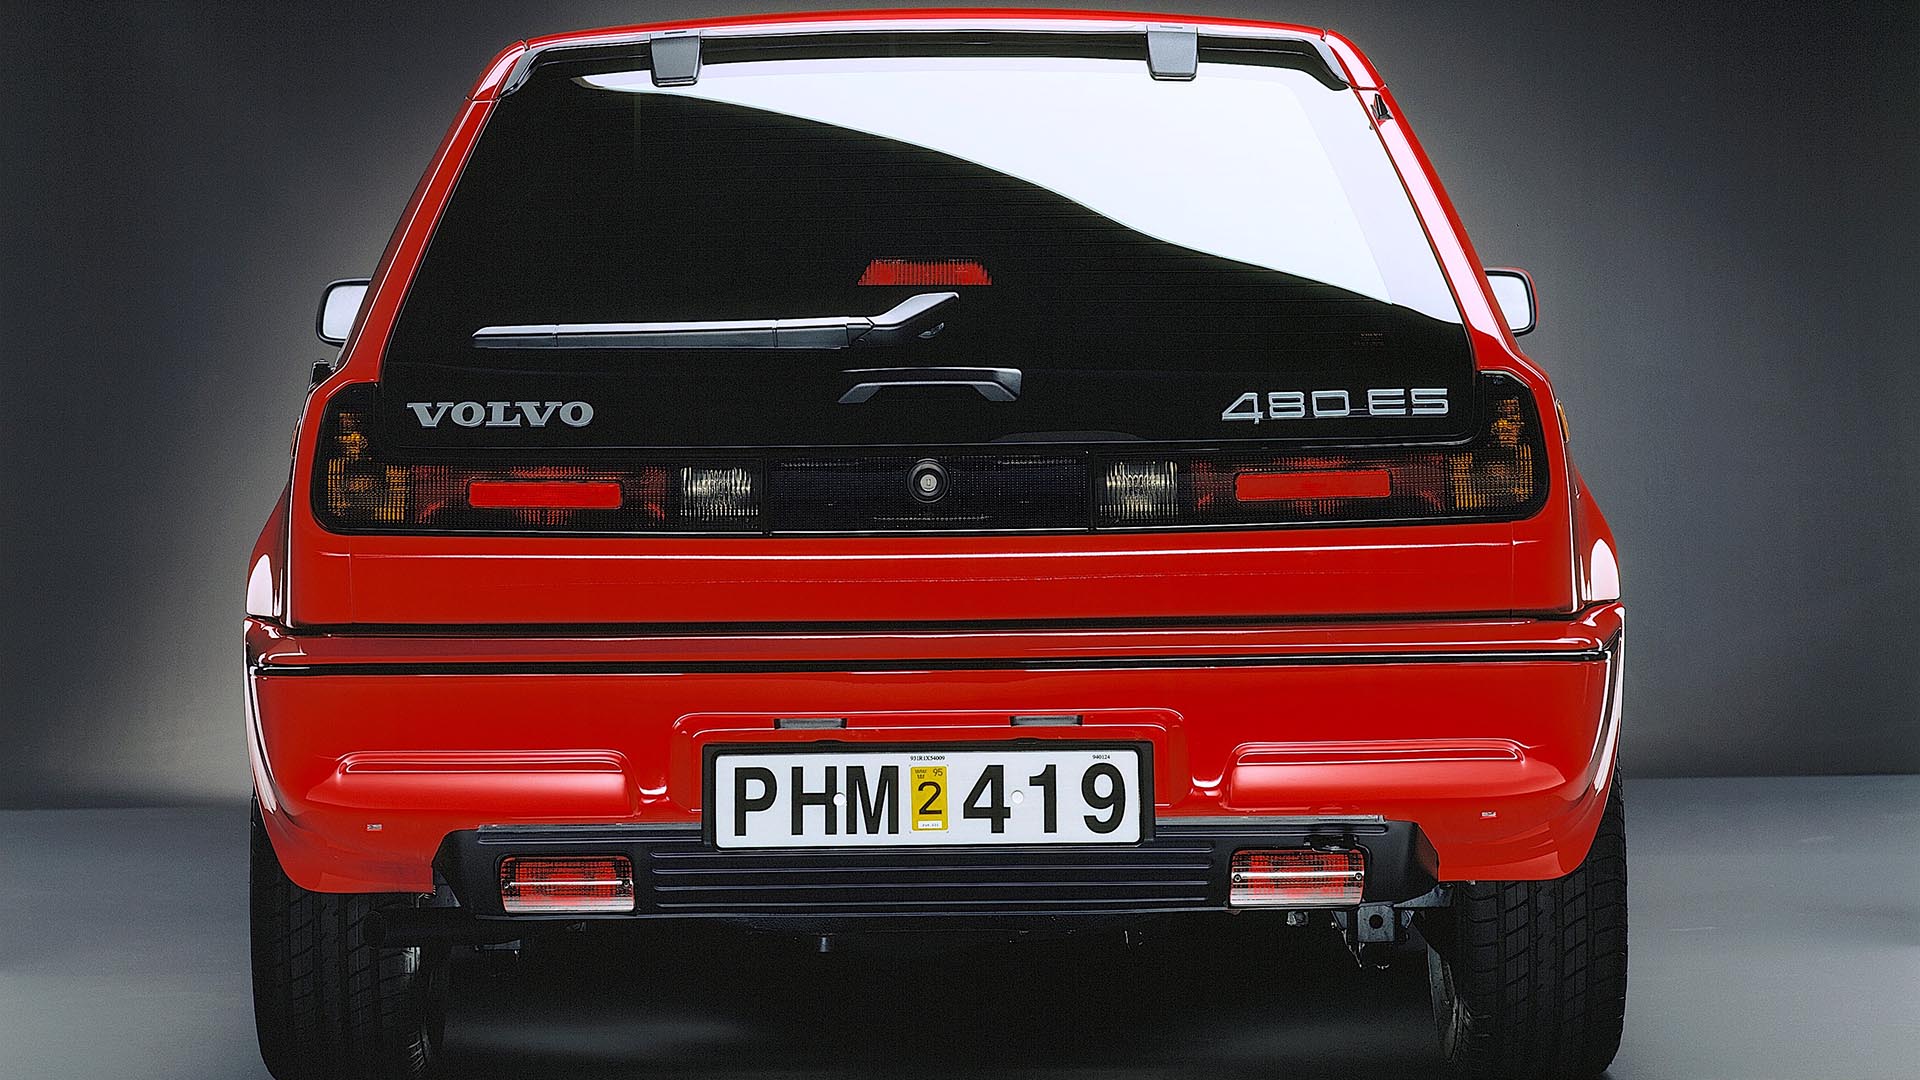 Volvo-480-ES-rear.jpg